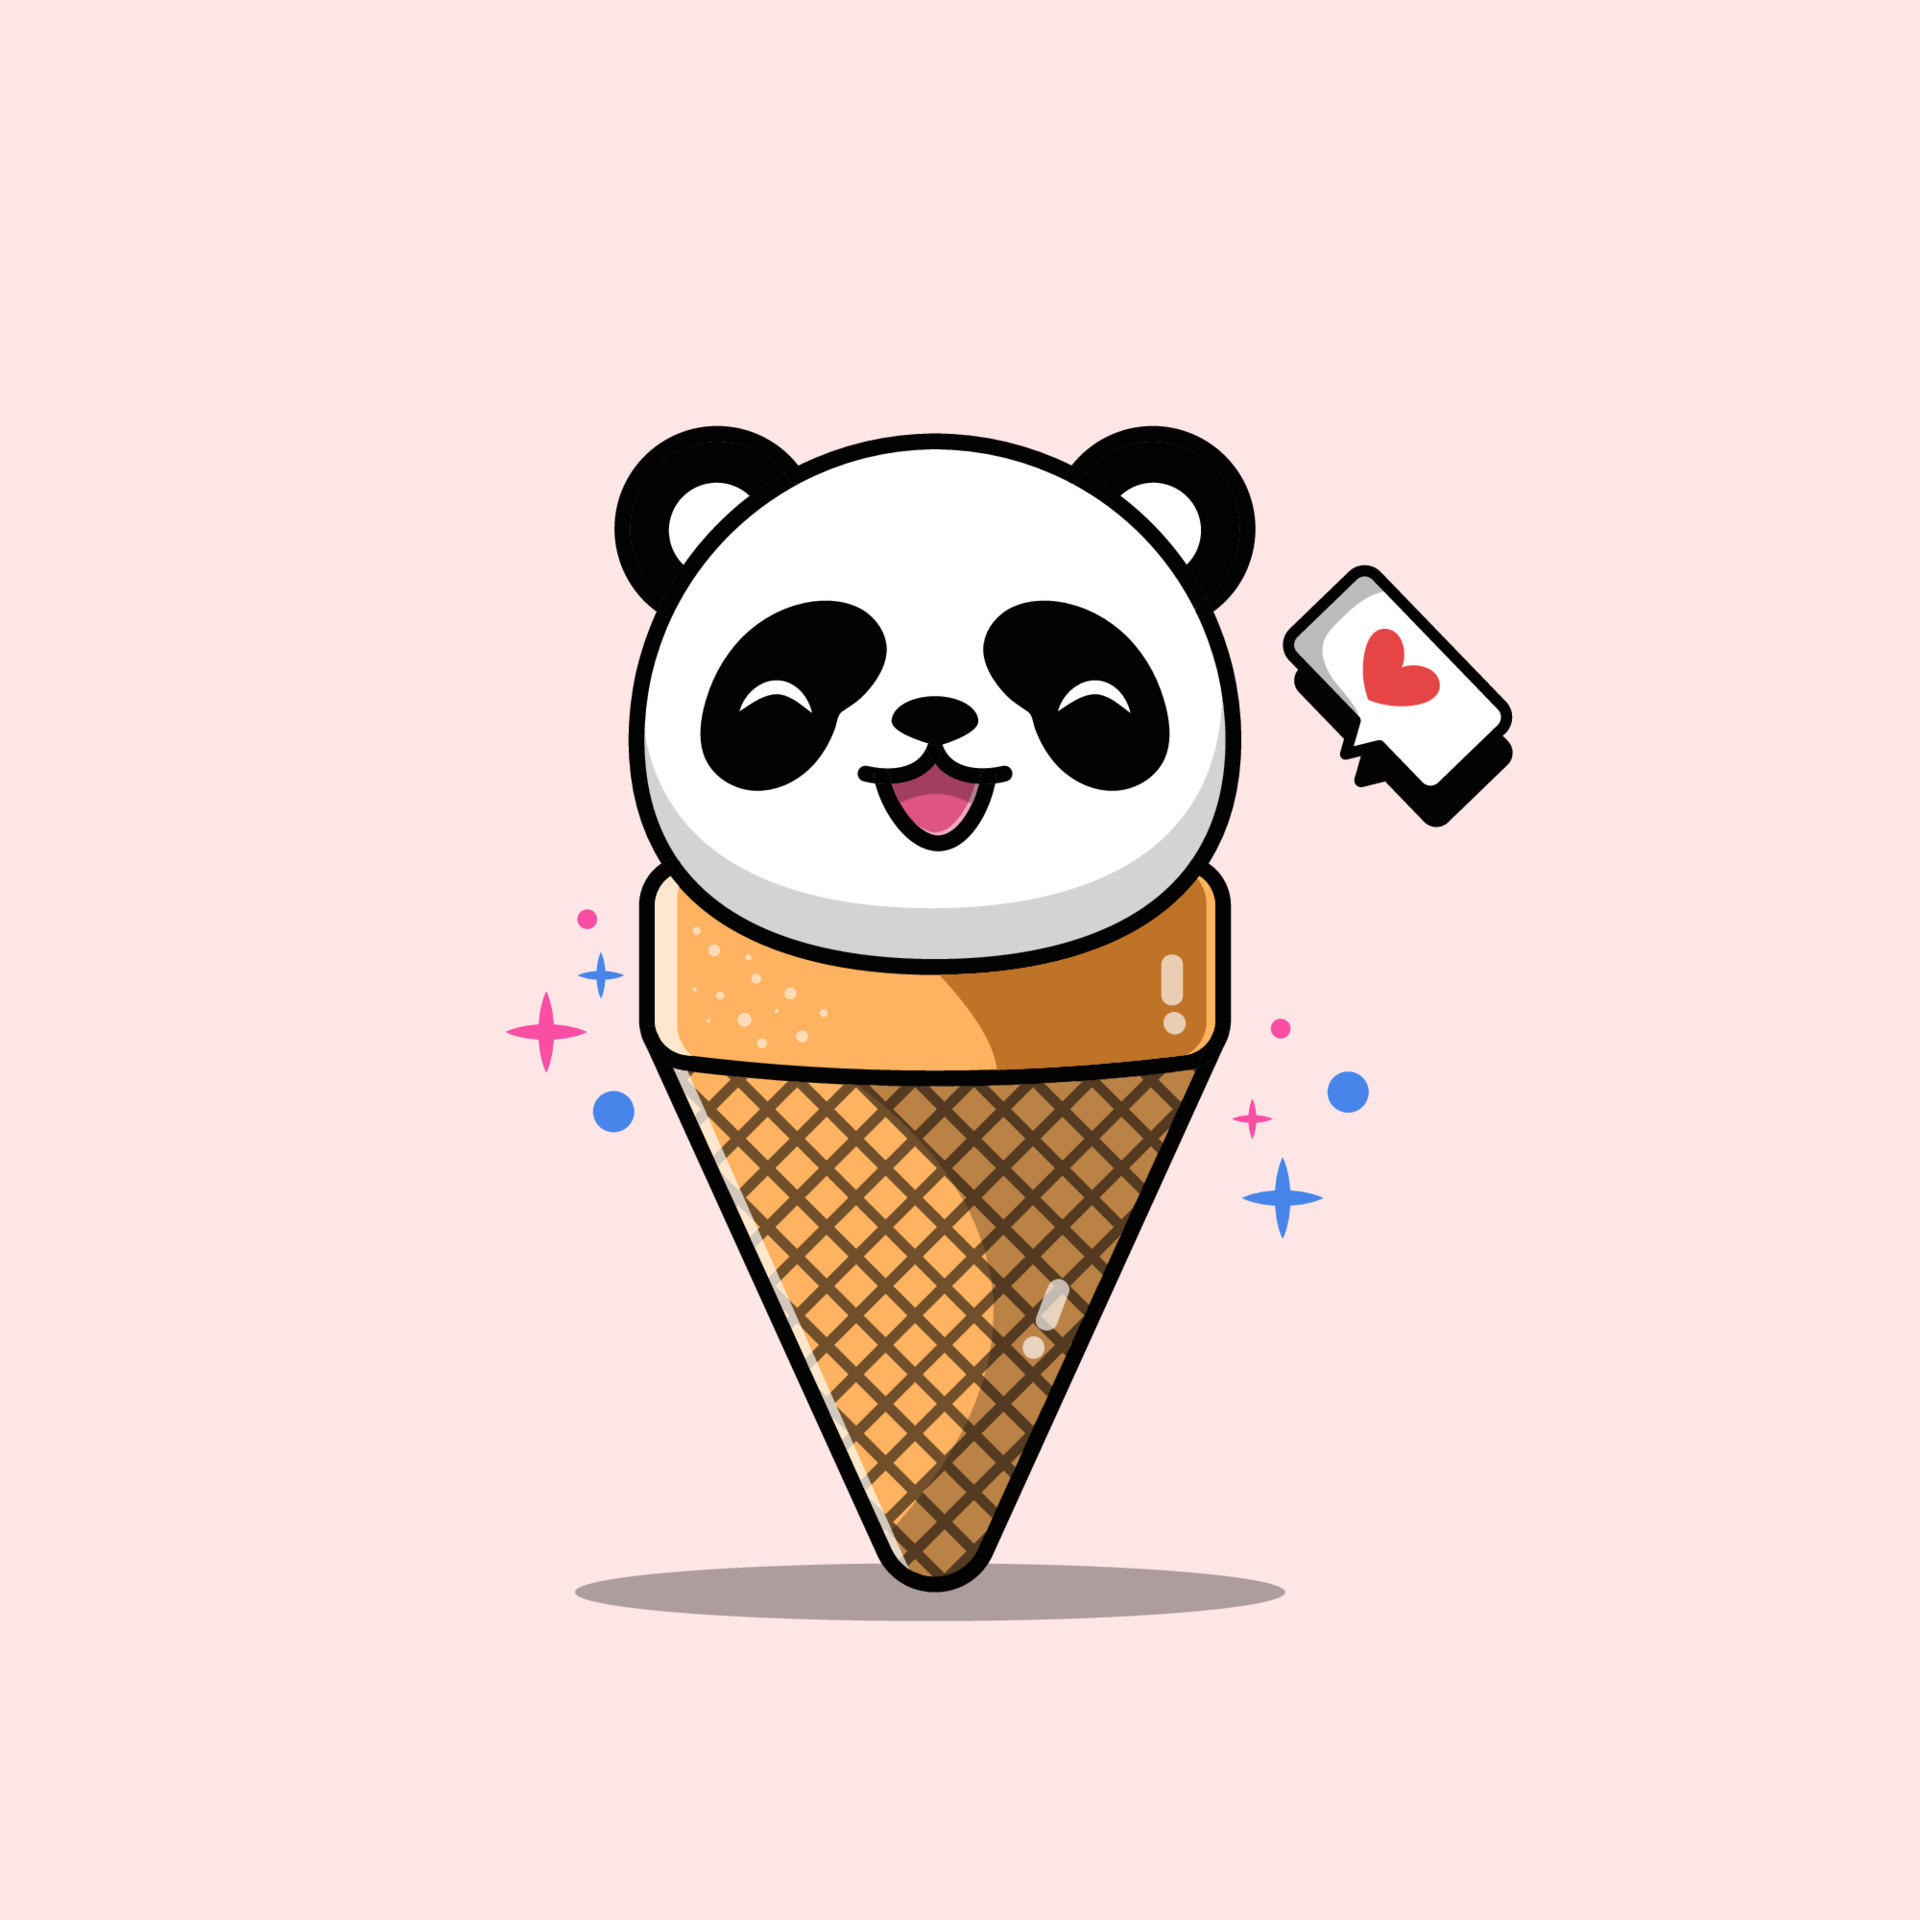 Panda De Desenho Animado Fofo Com Sorvete. Ilustração do Vetor - Ilustração  de fofofo, brinquedo: 213965491